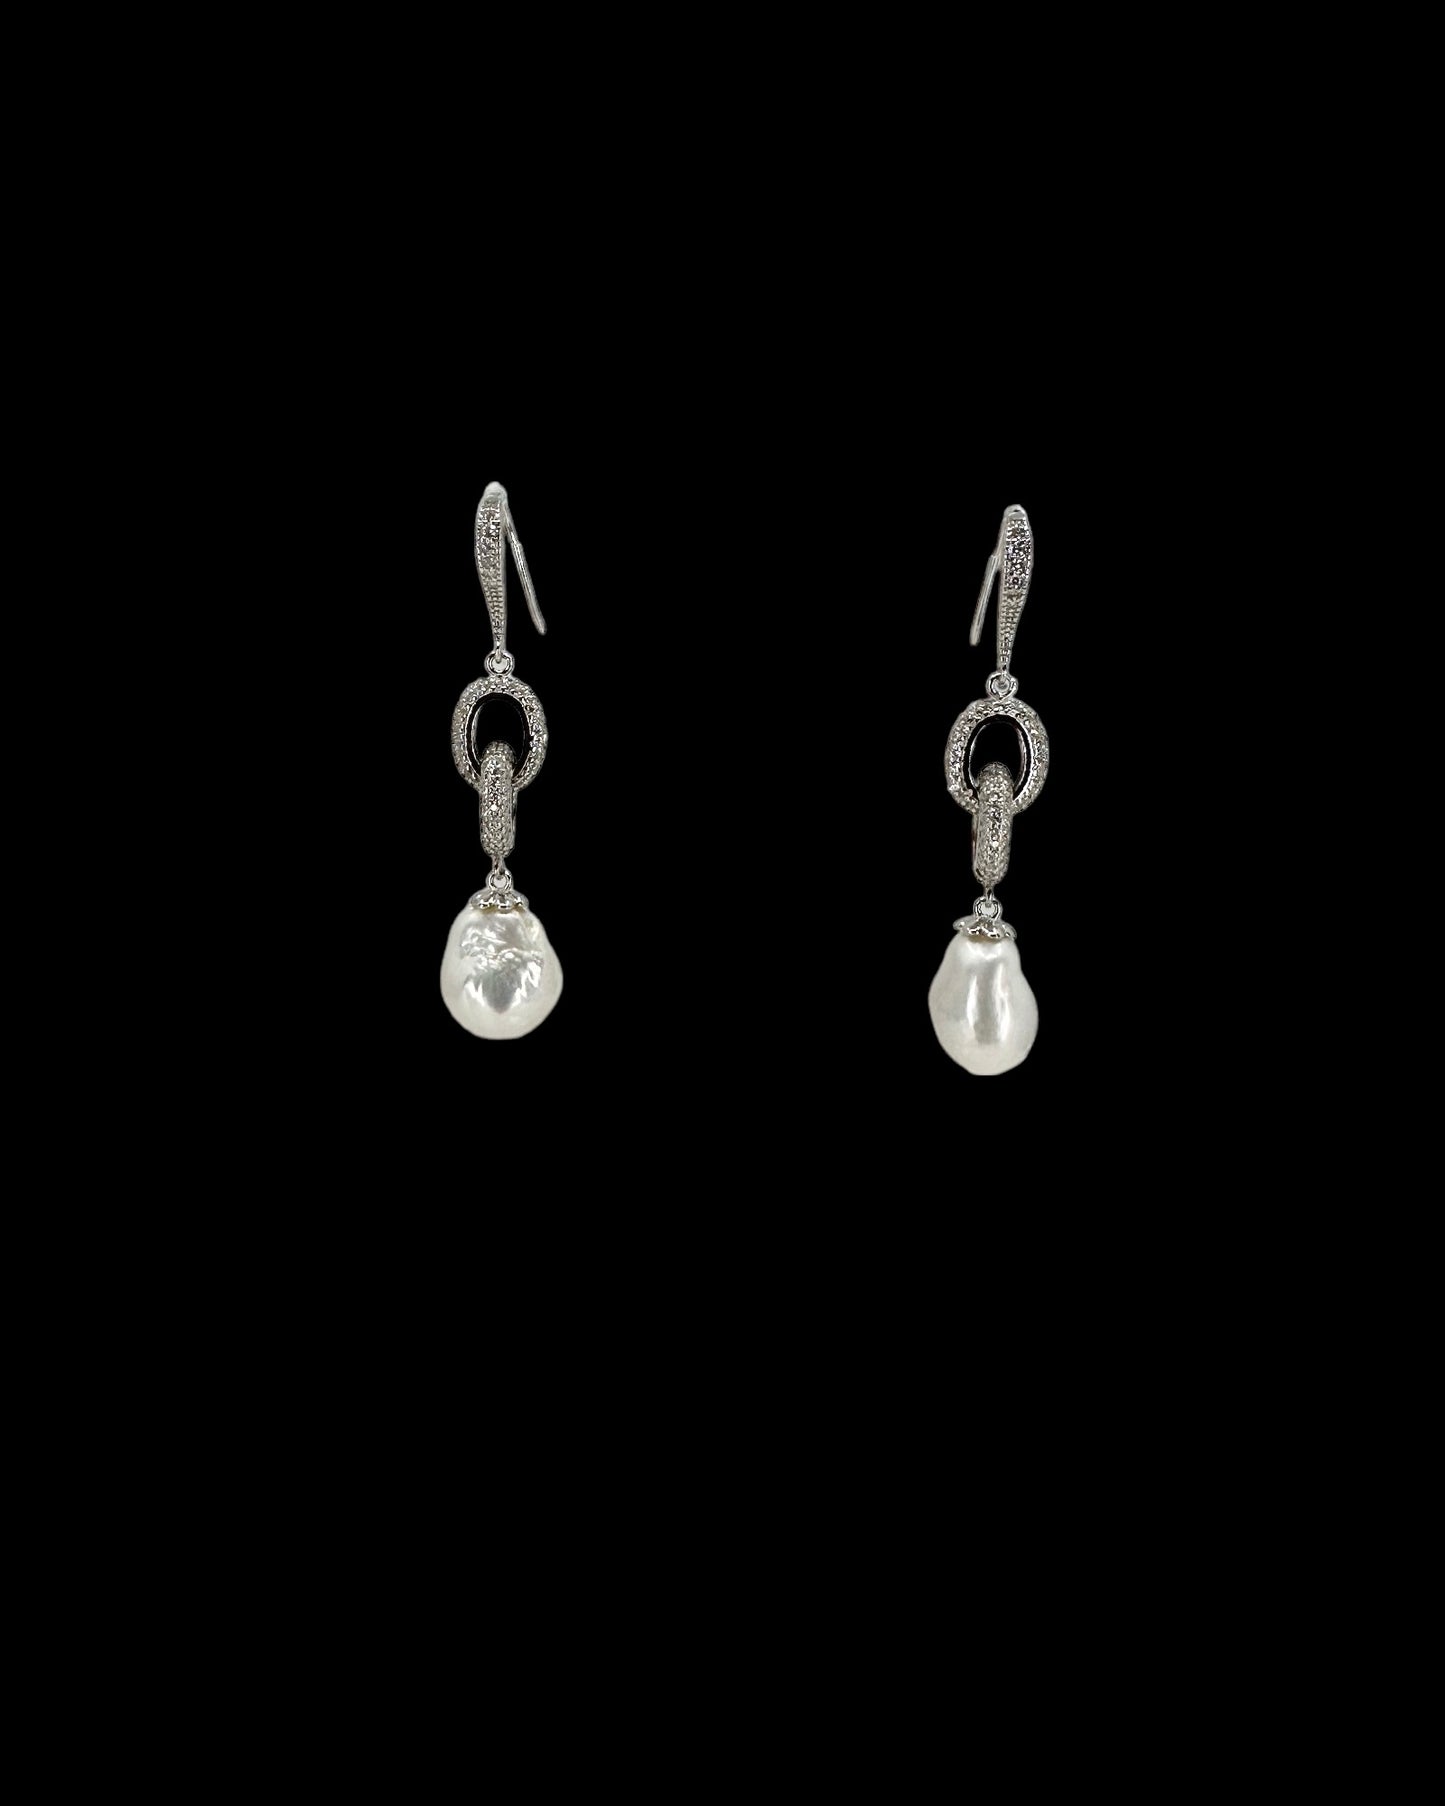 Silver Chain Pearl Earrings